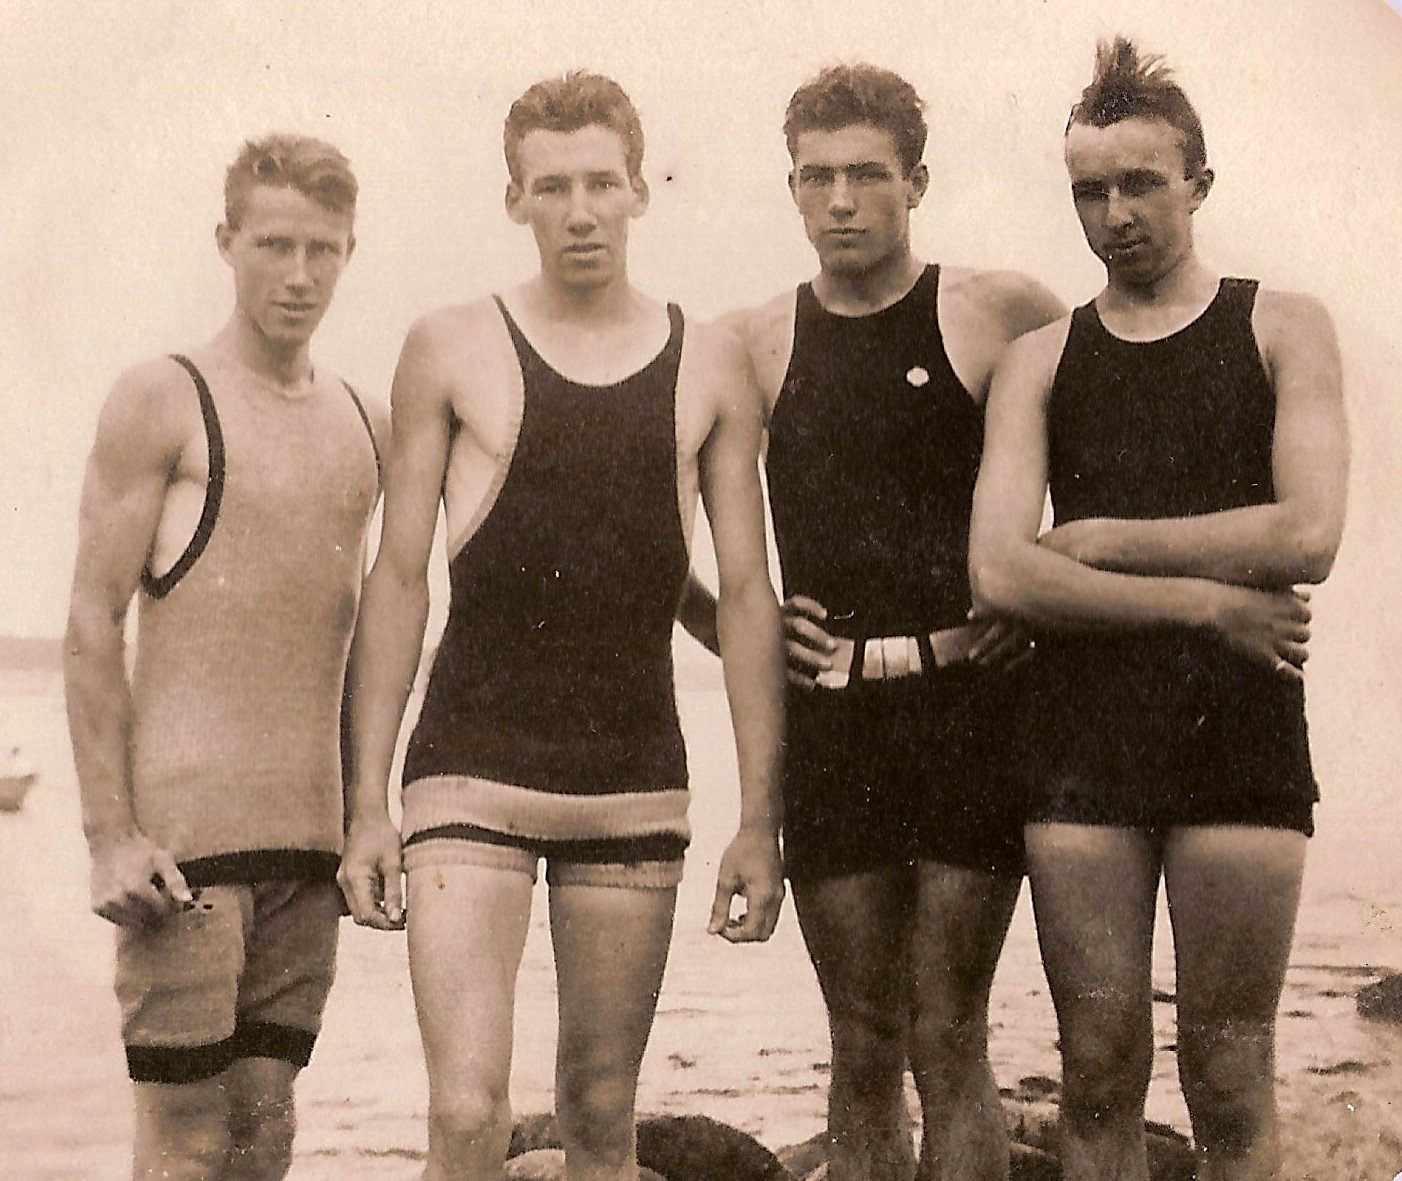 Mens Vintage Swimsuit 101